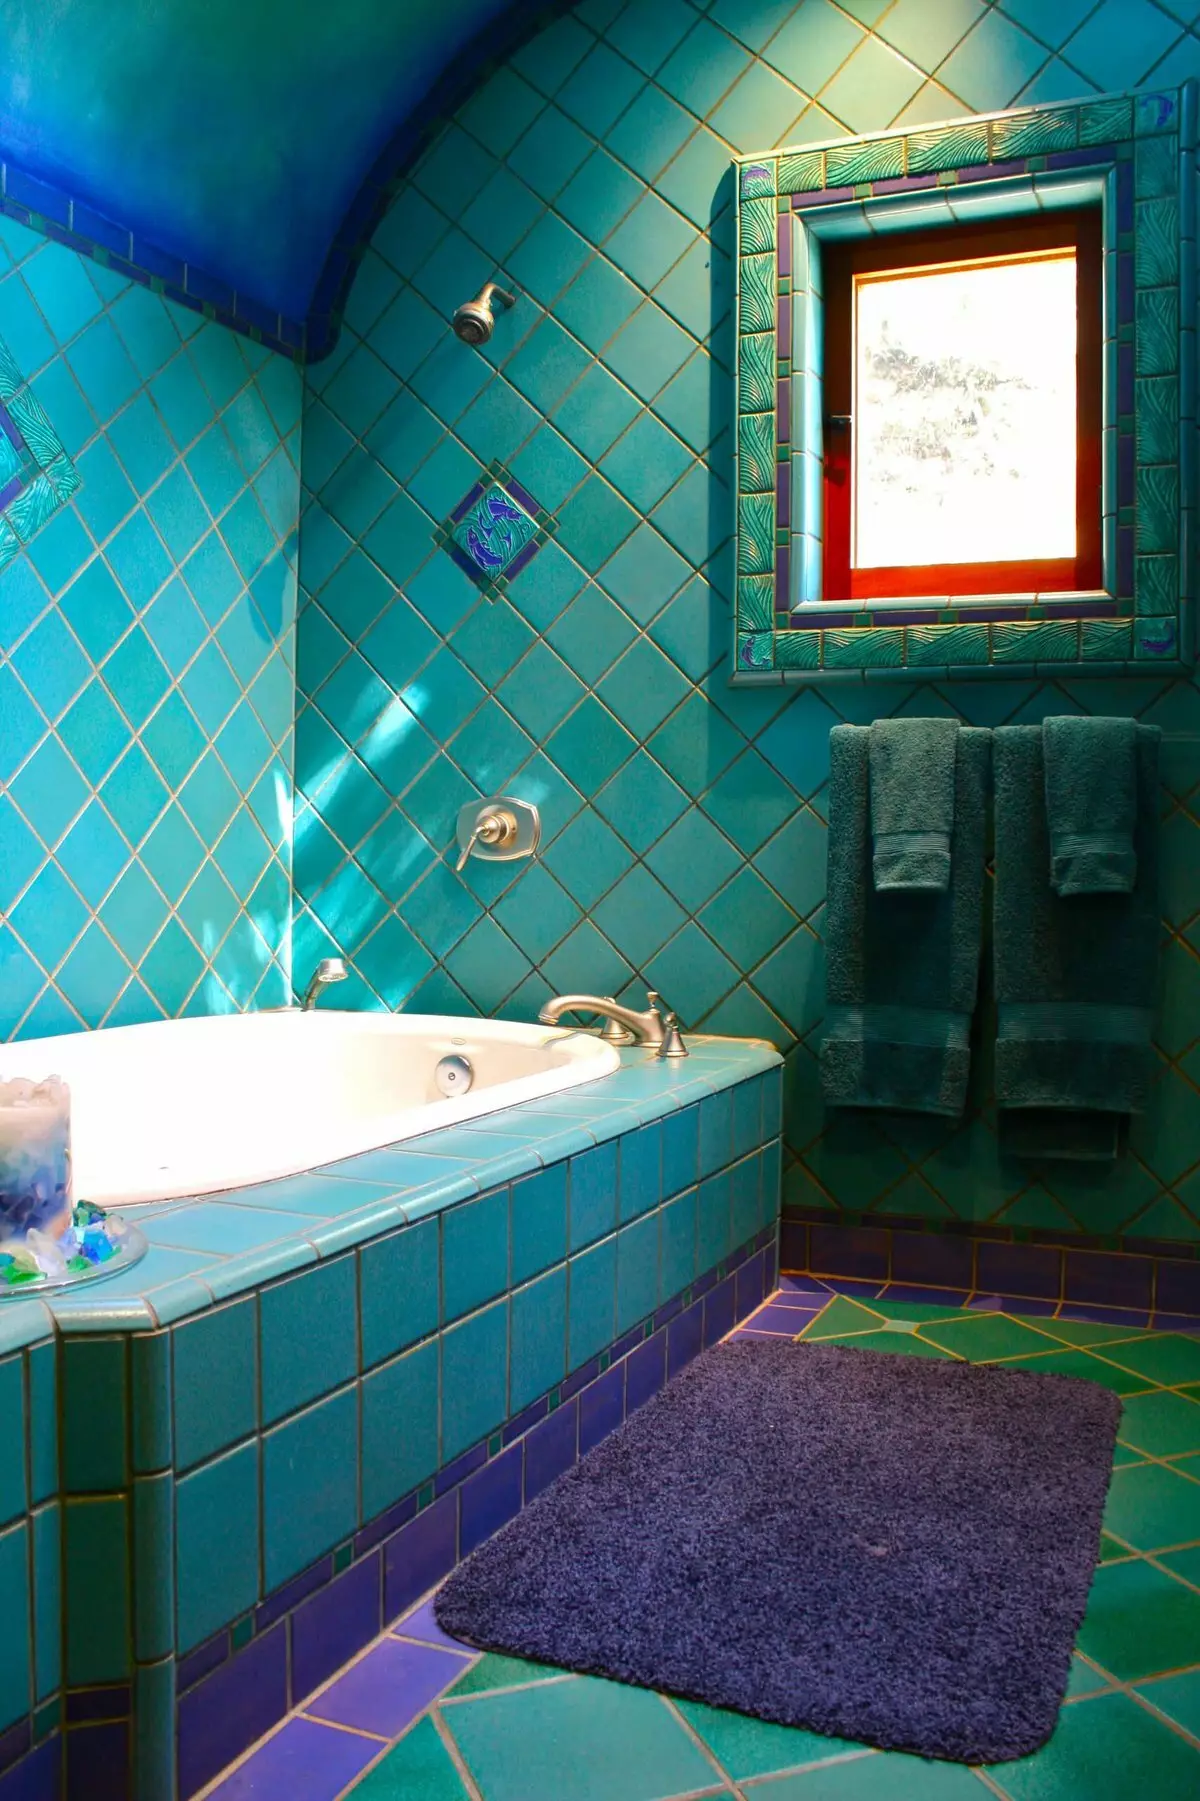 Ванная комната в сине-зеленых тонах